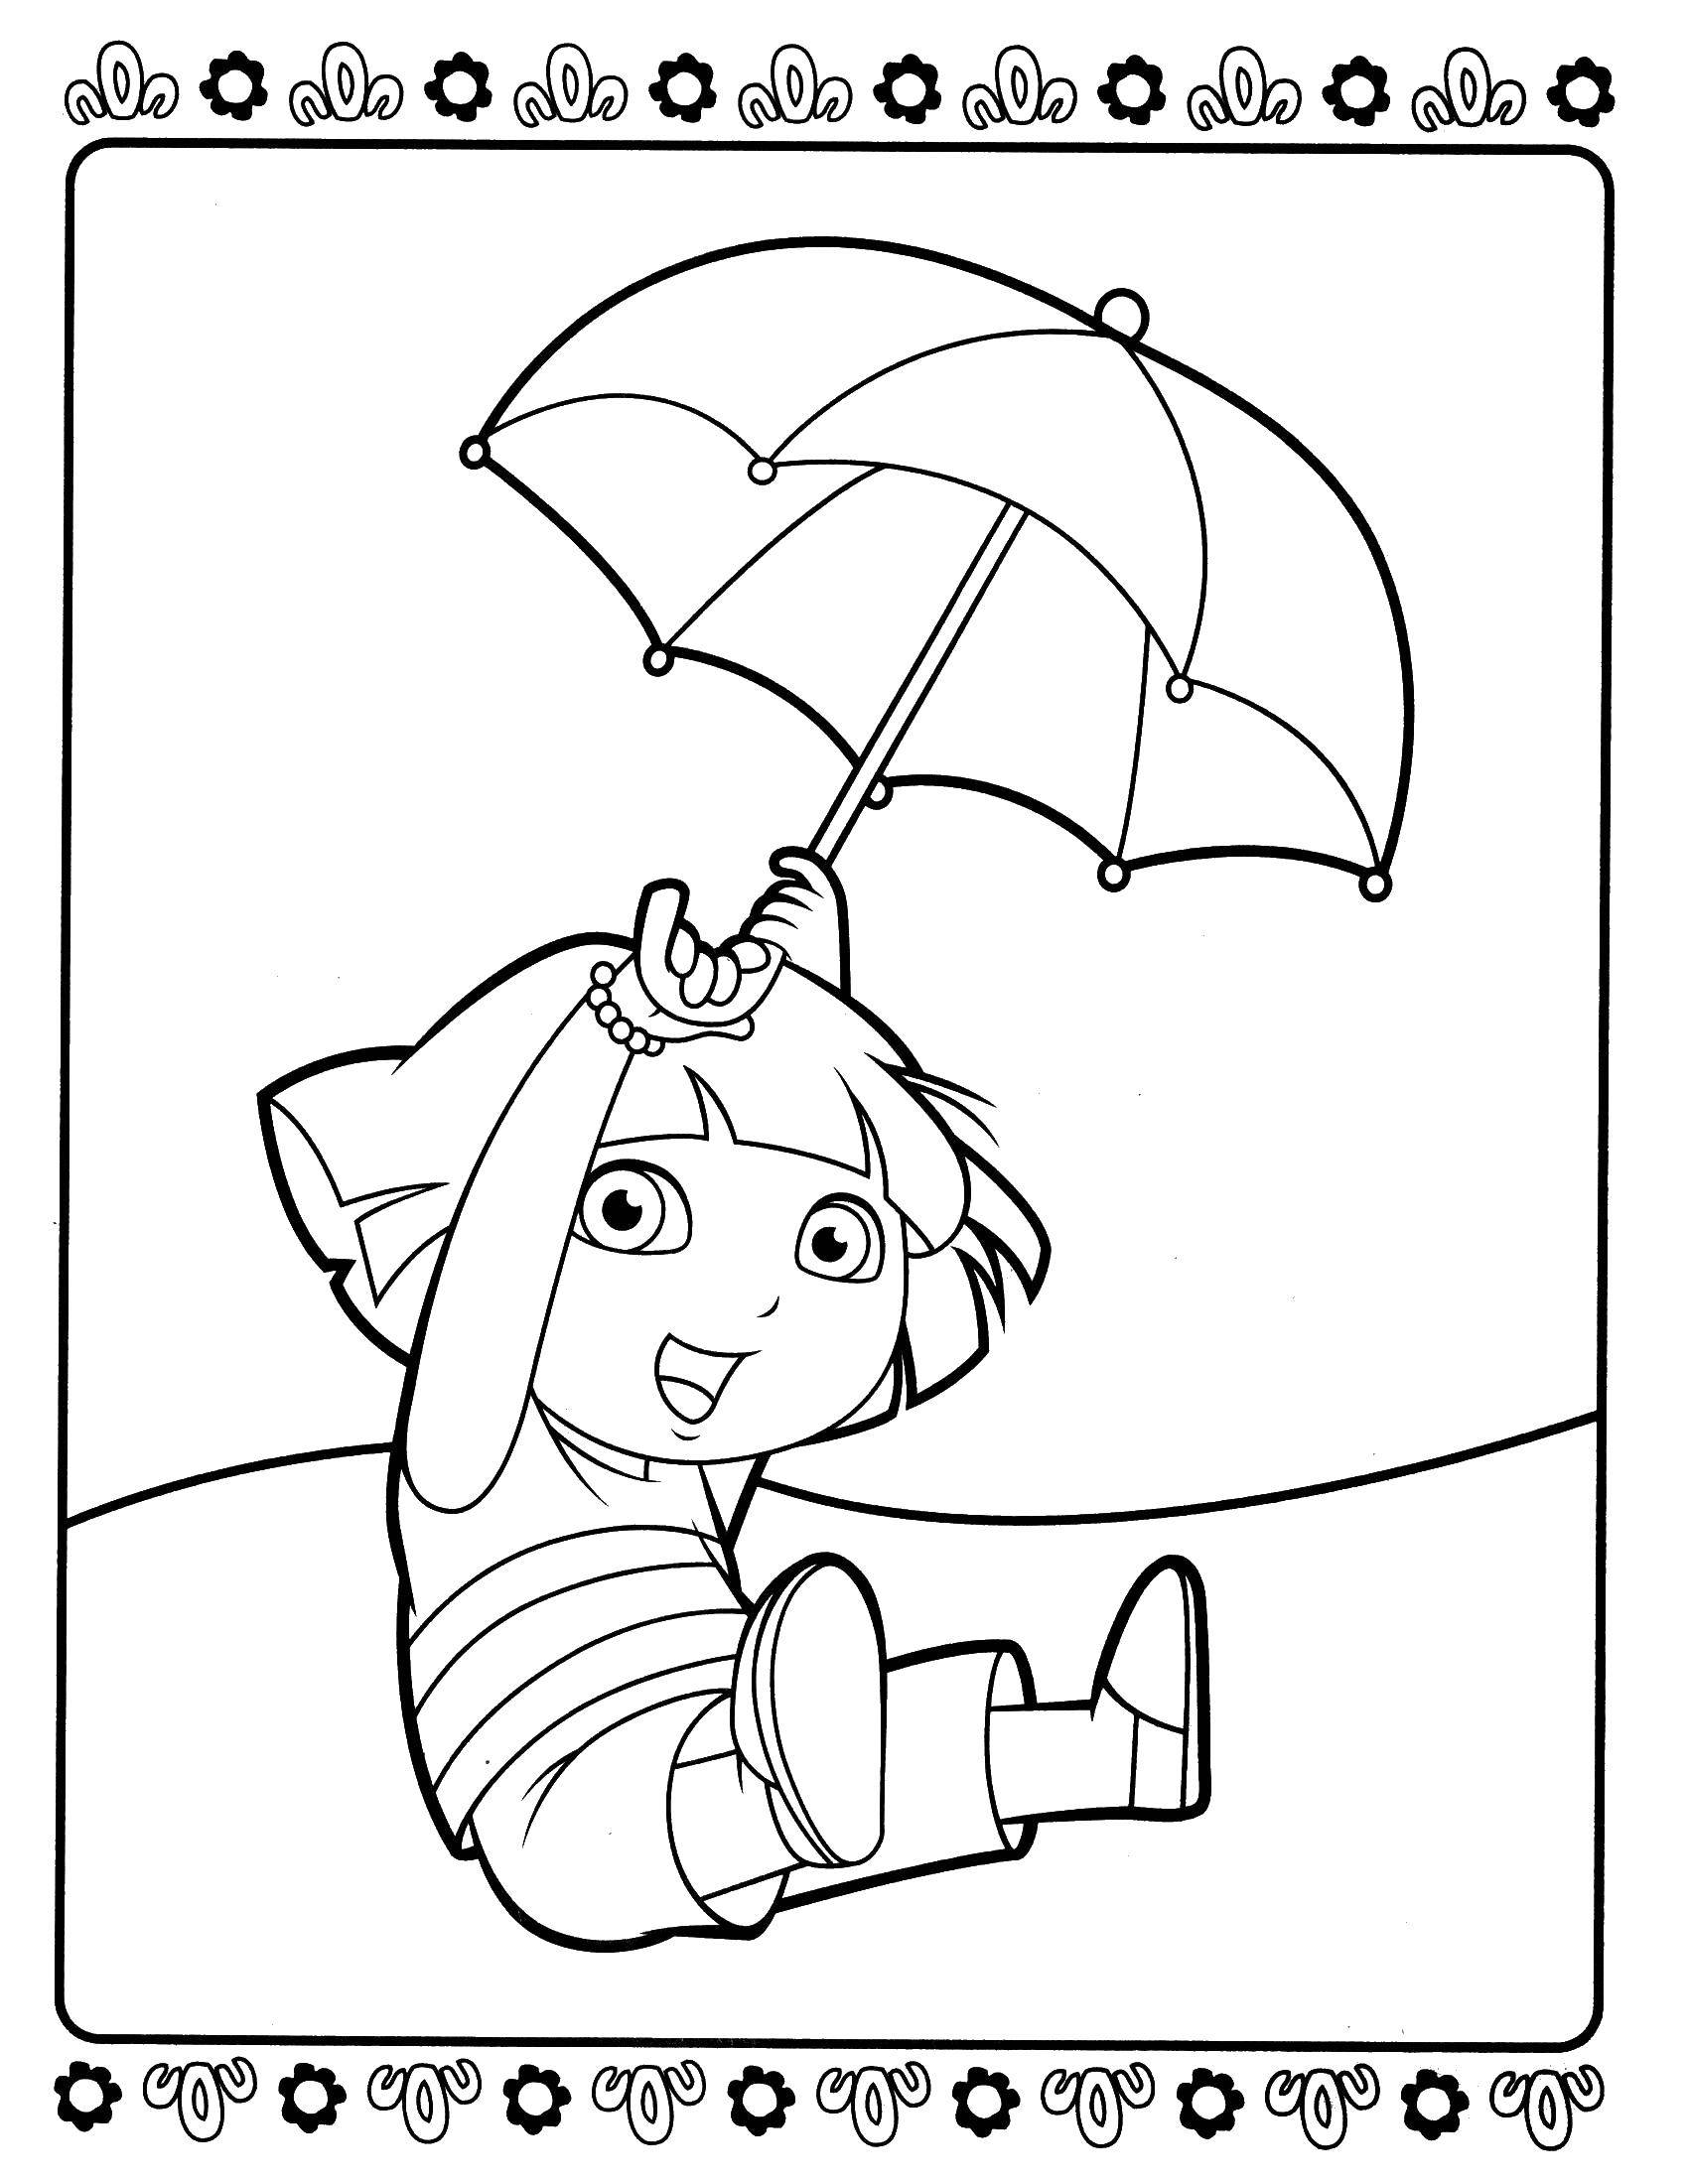 Название: Раскраска Даша летит на зонтике. Категория: даша путешественница. Теги: Персонаж из мультфильма.